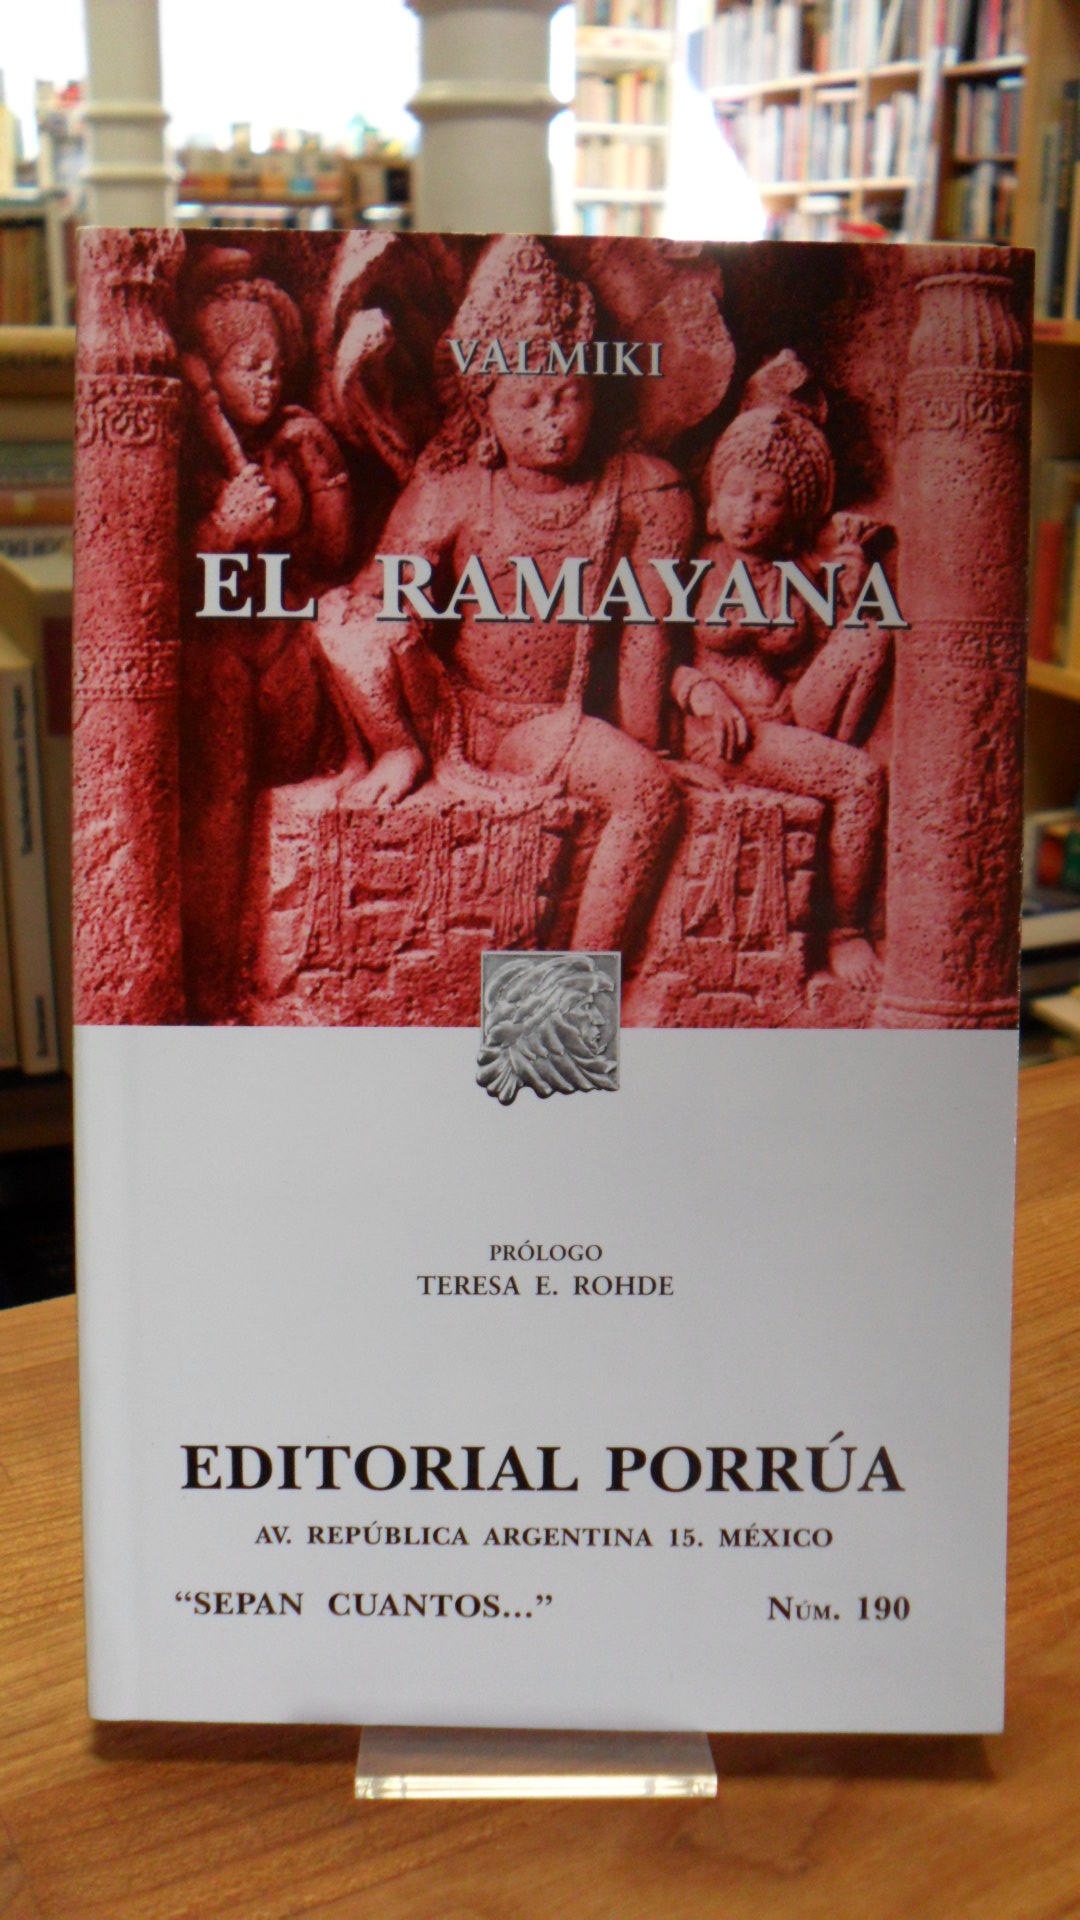 Valmiki, El Ramayana,